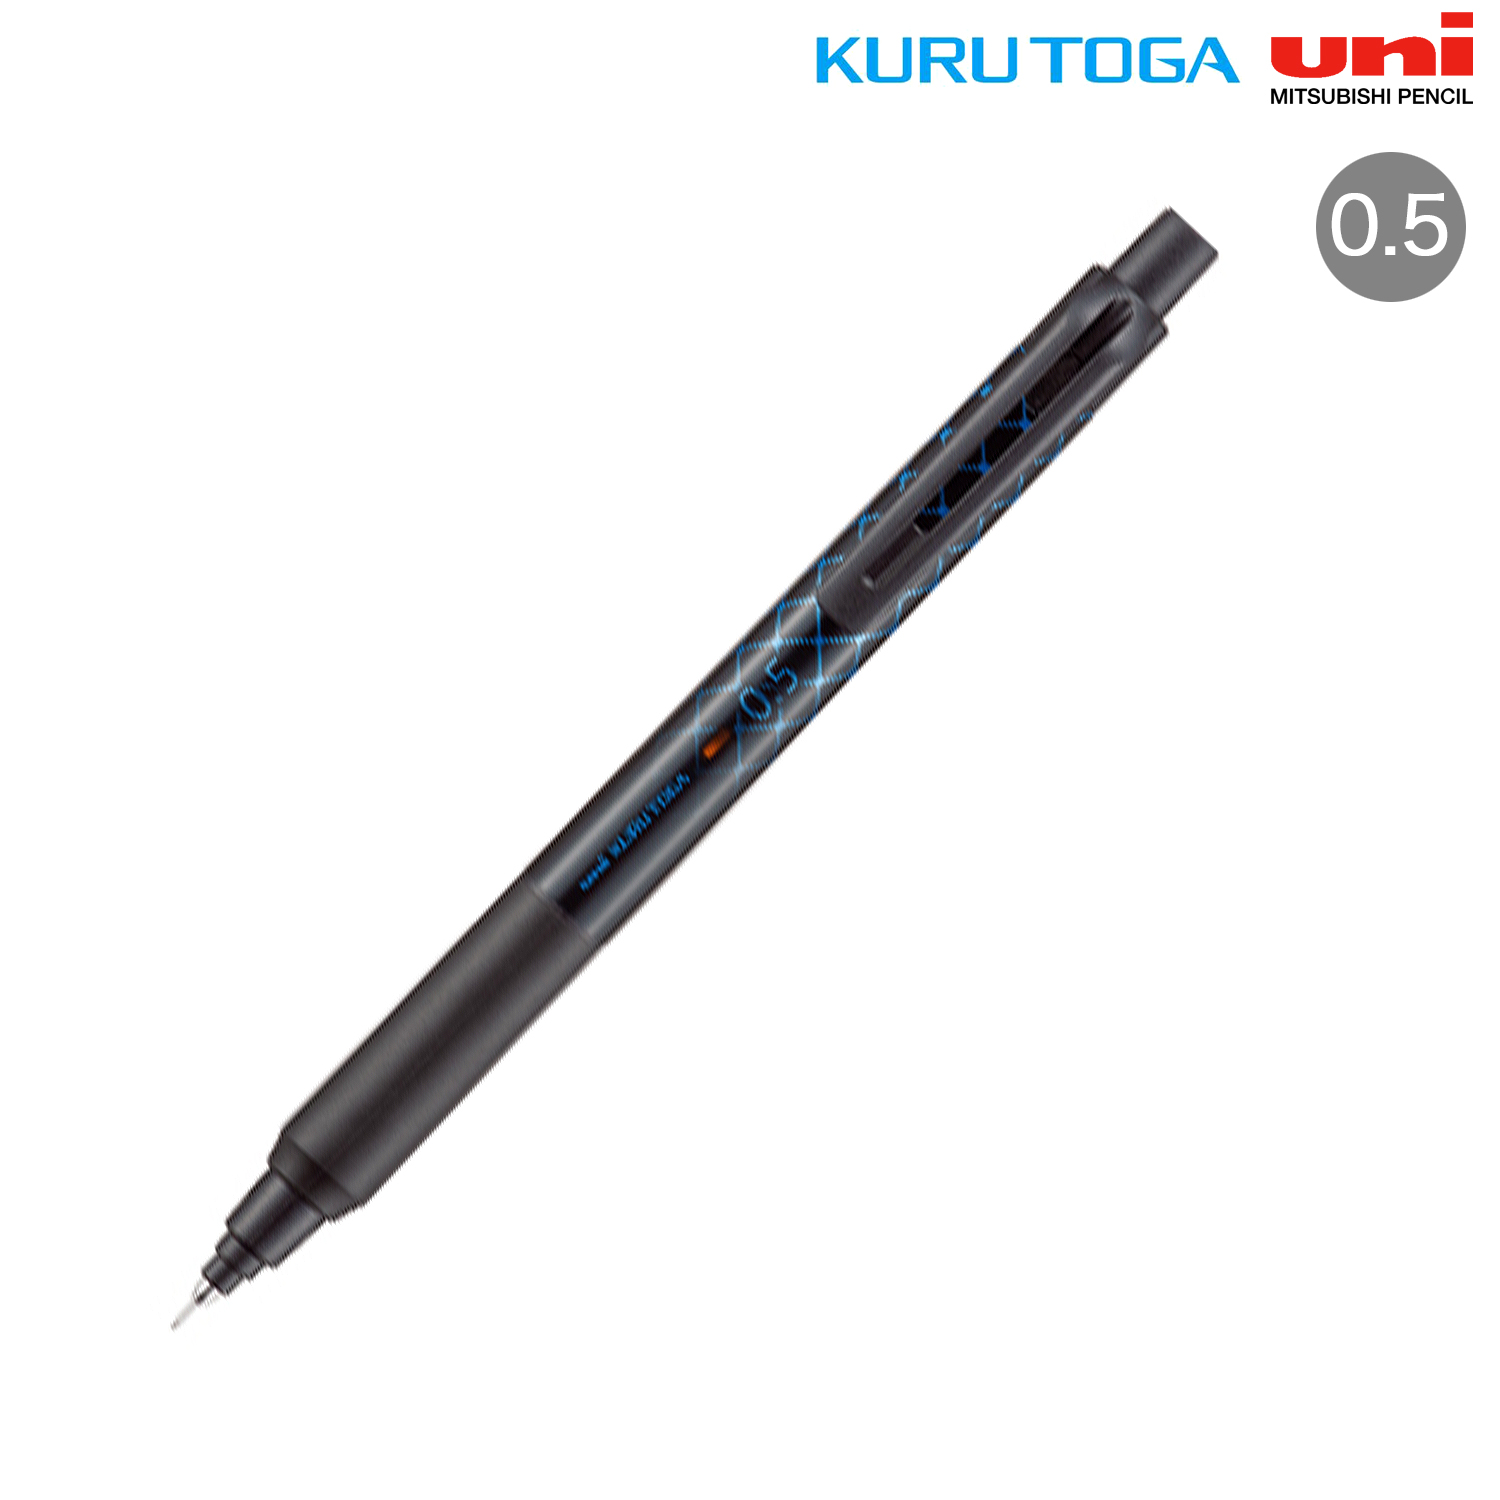 三菱鉛筆 クルトガ KSモデル 0.5mm - 筆記具